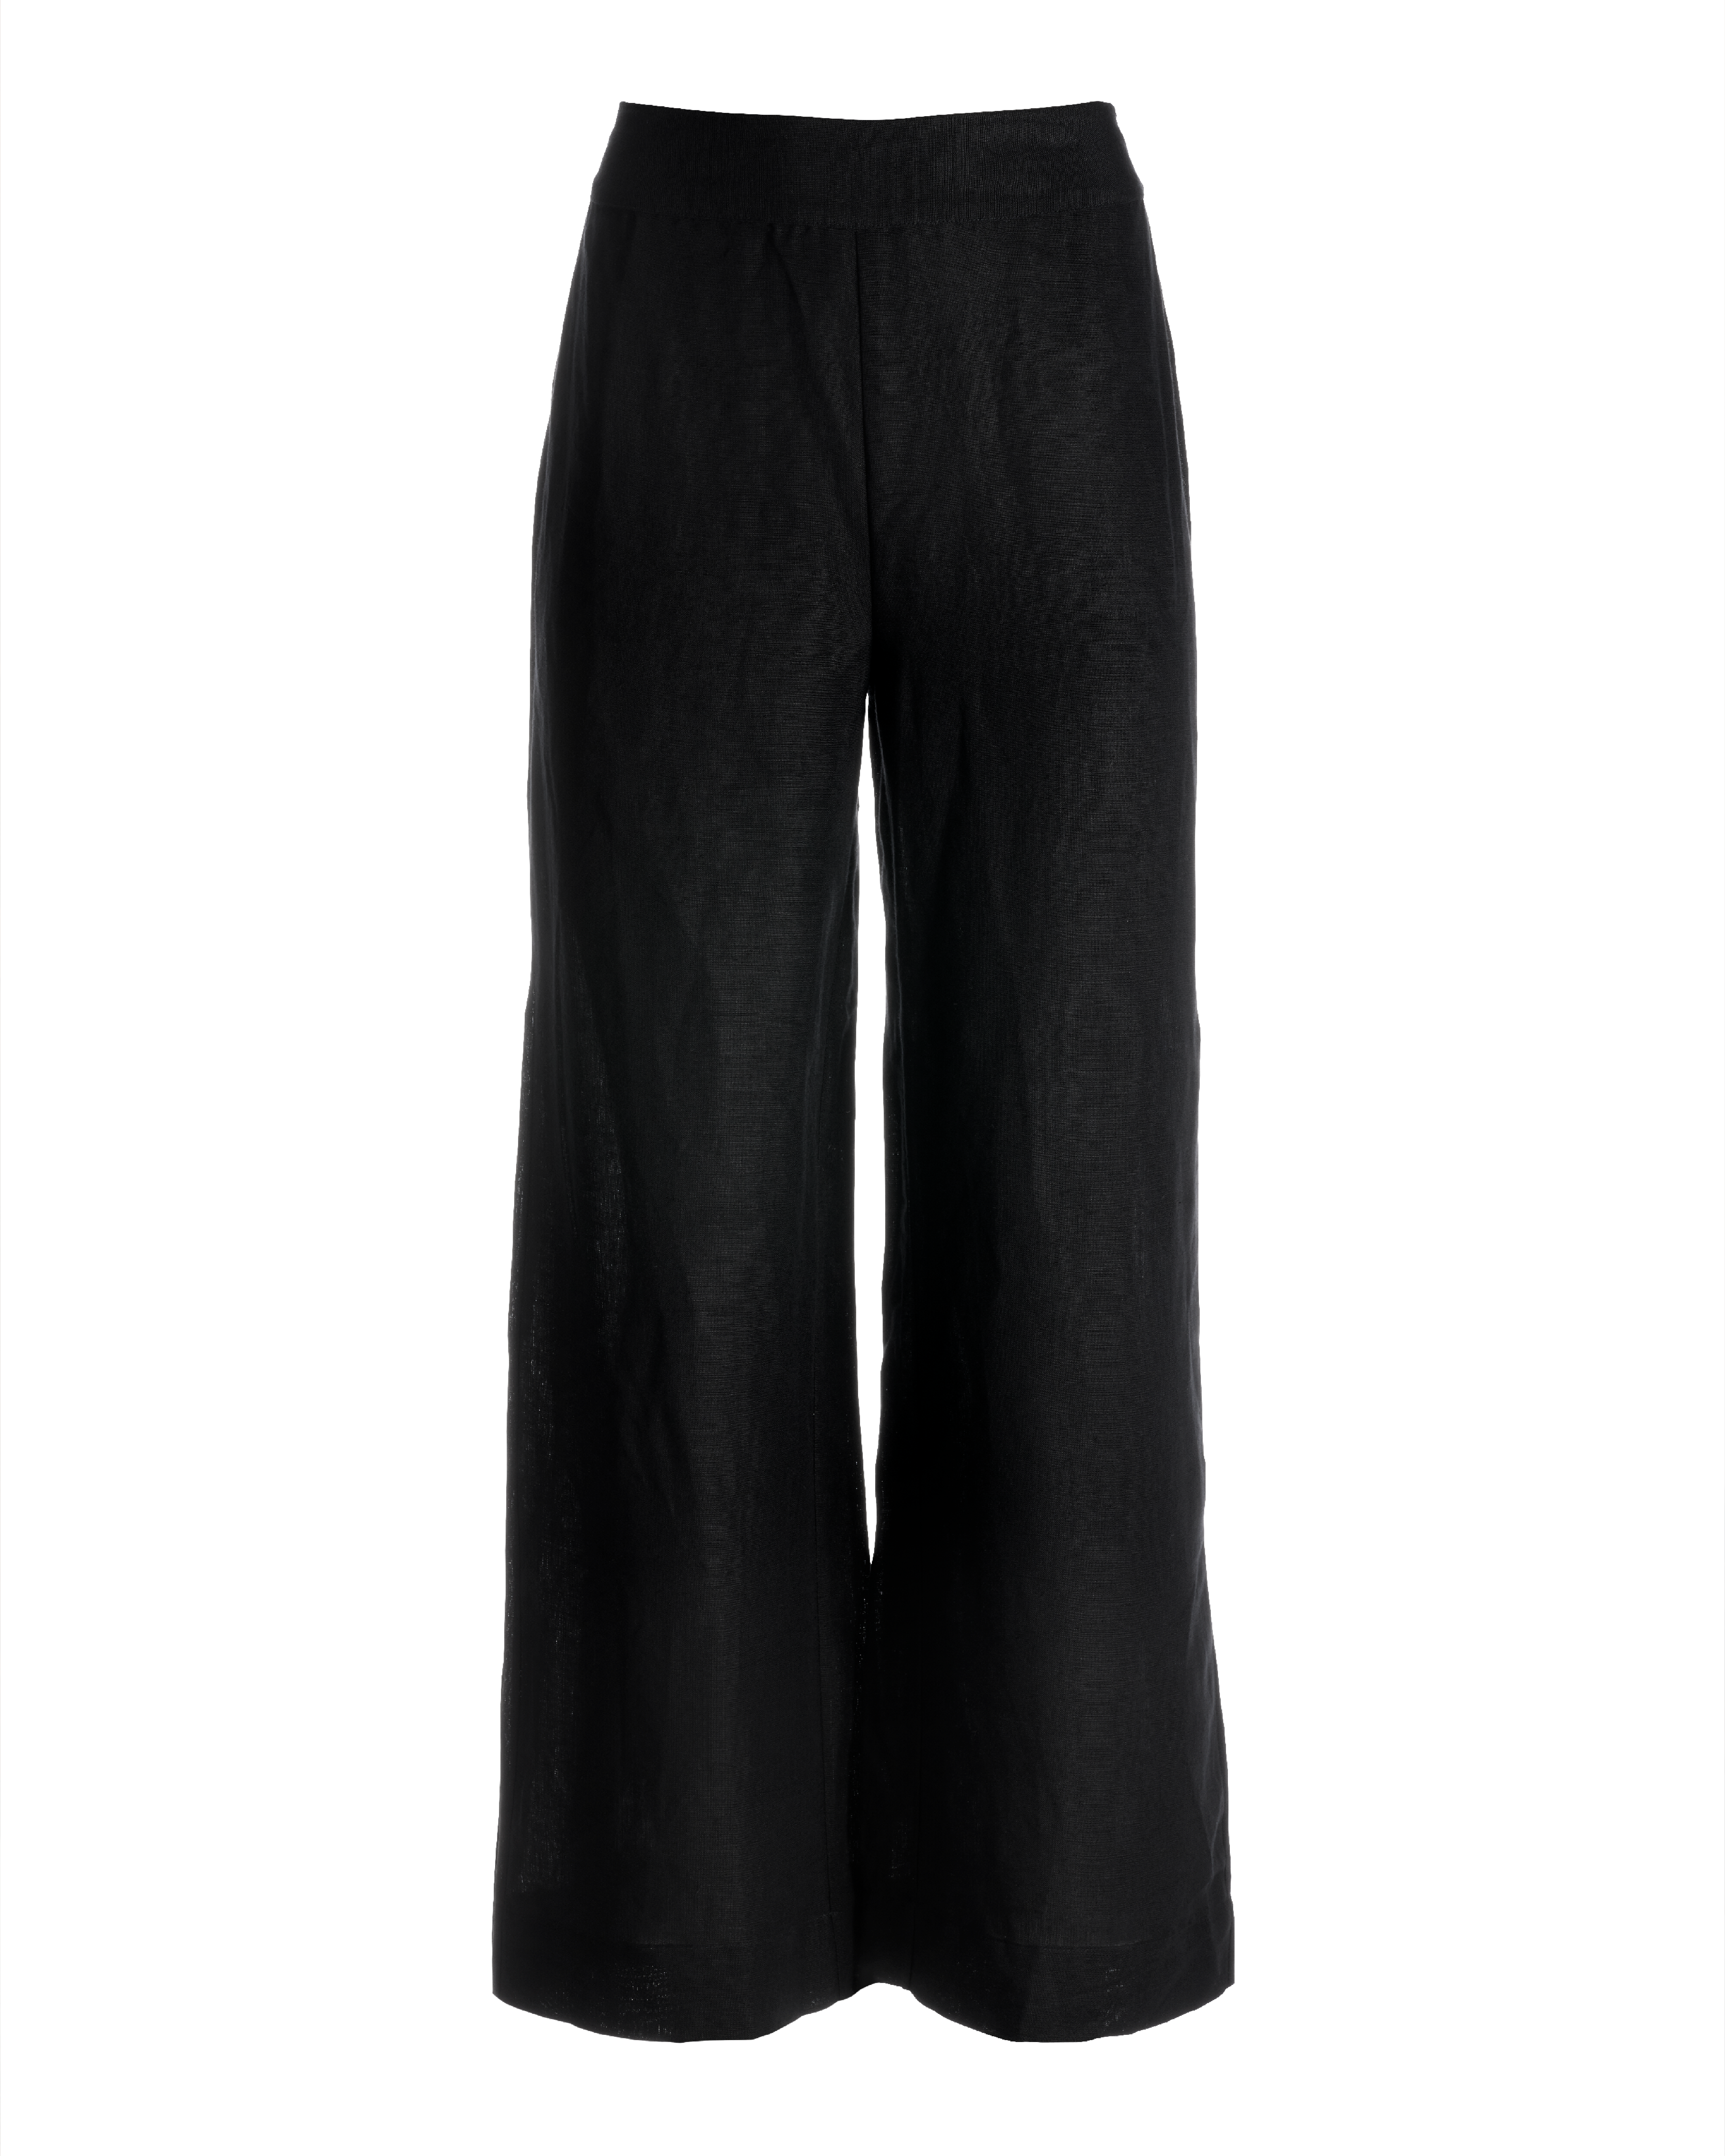 Boston Proper - Black - Malibu Linen Cropped Pant - Xxs